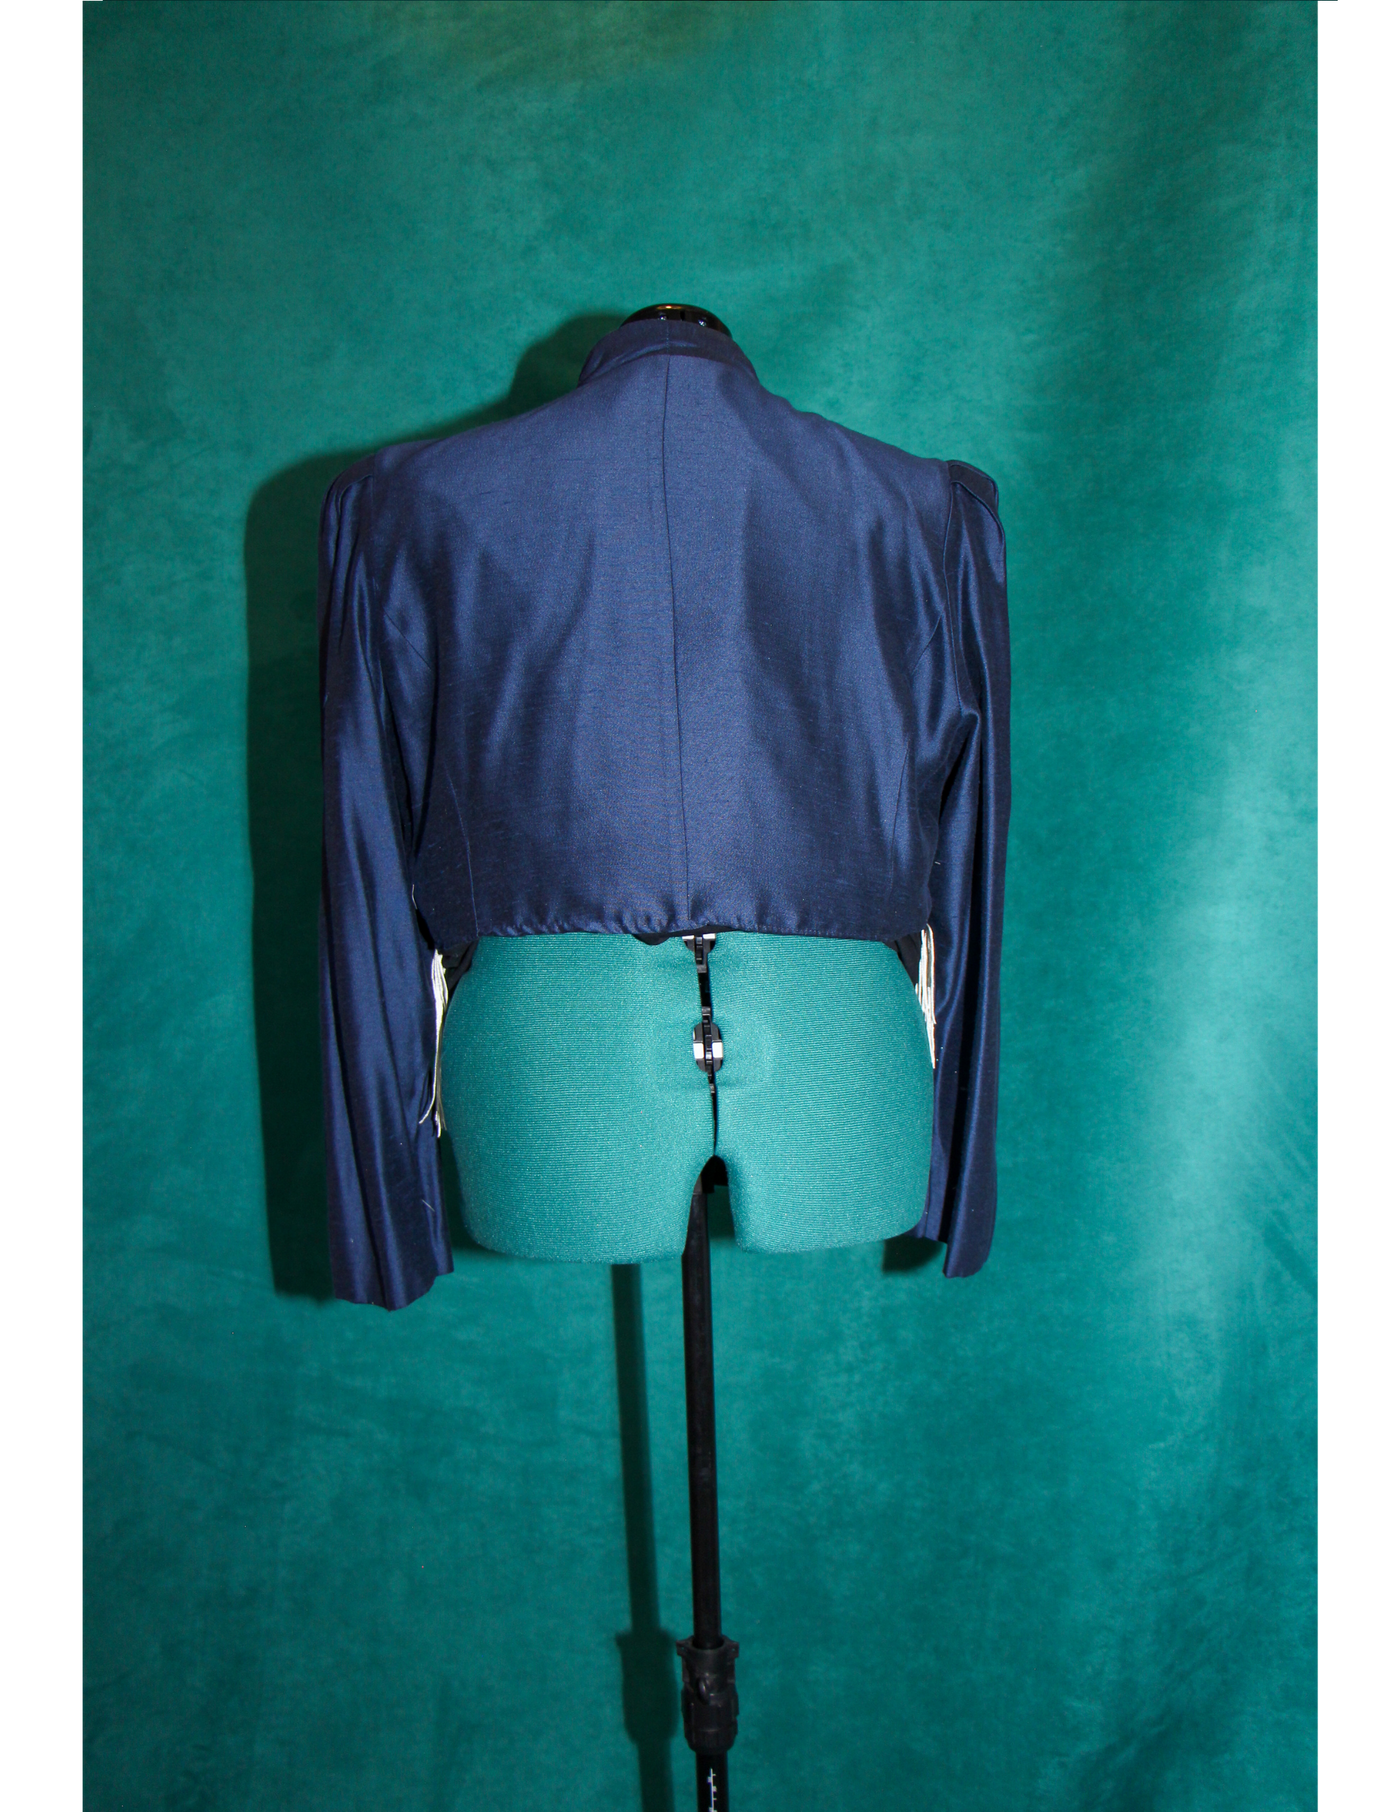 Western Fringe Blazer with Rhinestones and Matching Skirt - Size Large